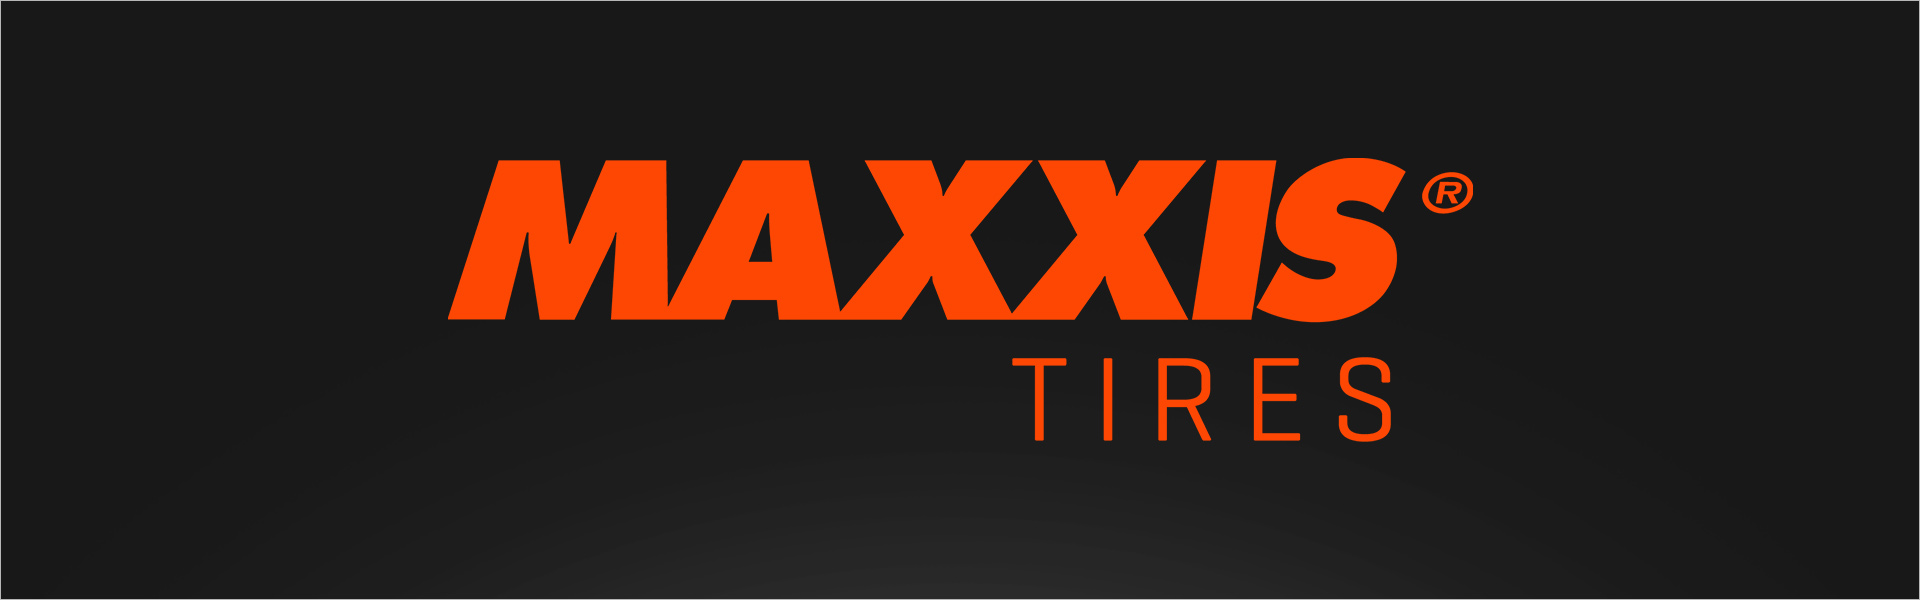 Maxxis VANSMART MCV3+ 185/80R14C 102 R Maxxis